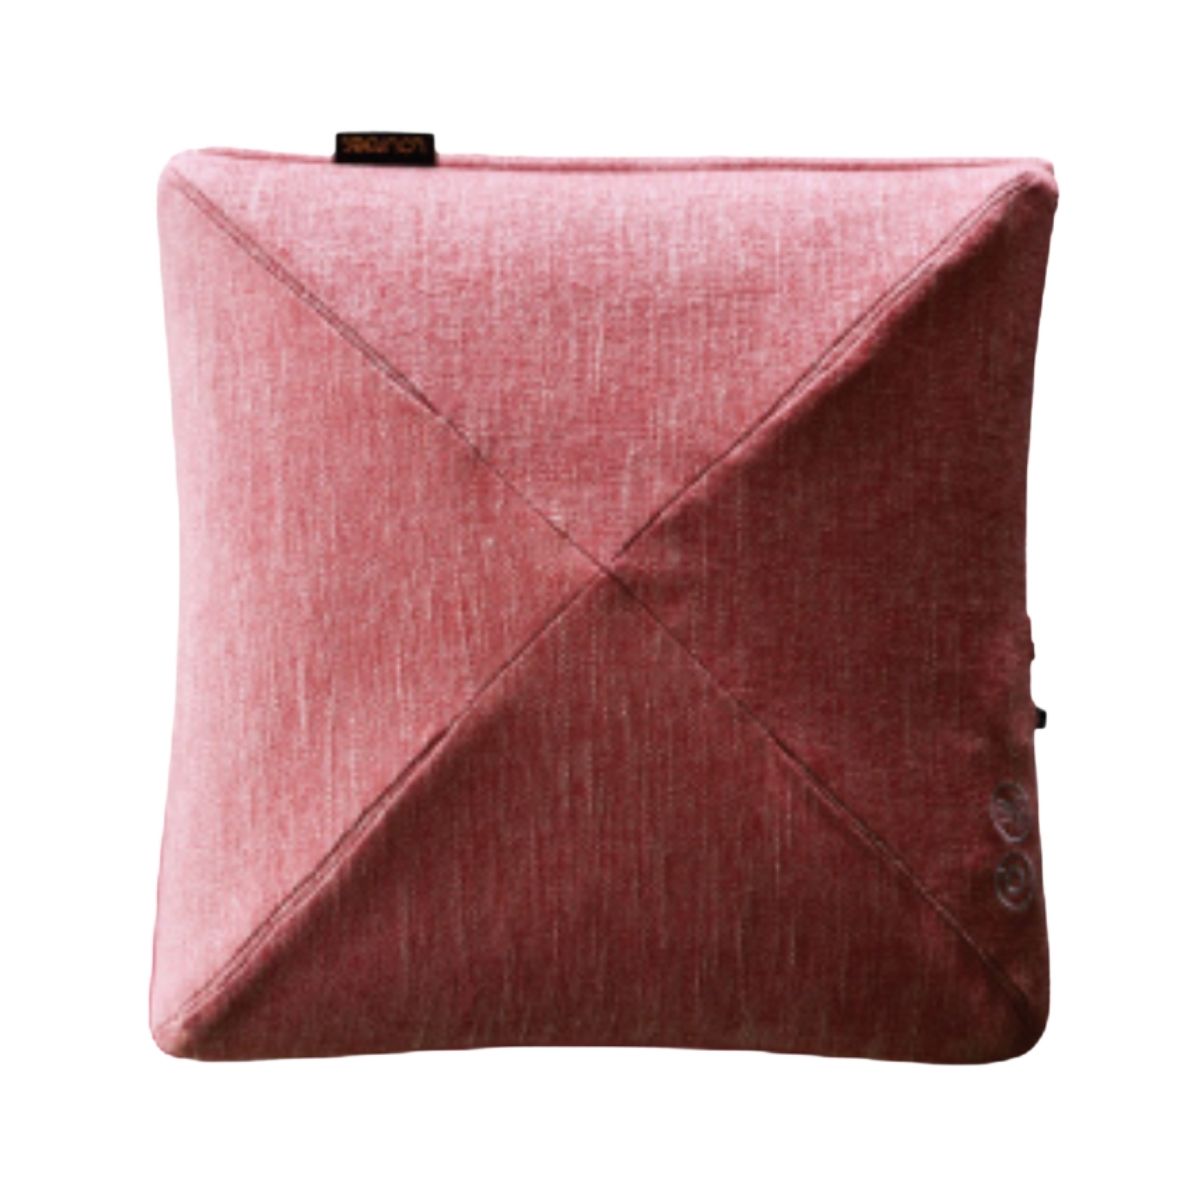 3D Momi Premium Massage Cushion AX-HCL310 | Lourdes - Wake Concept Store  